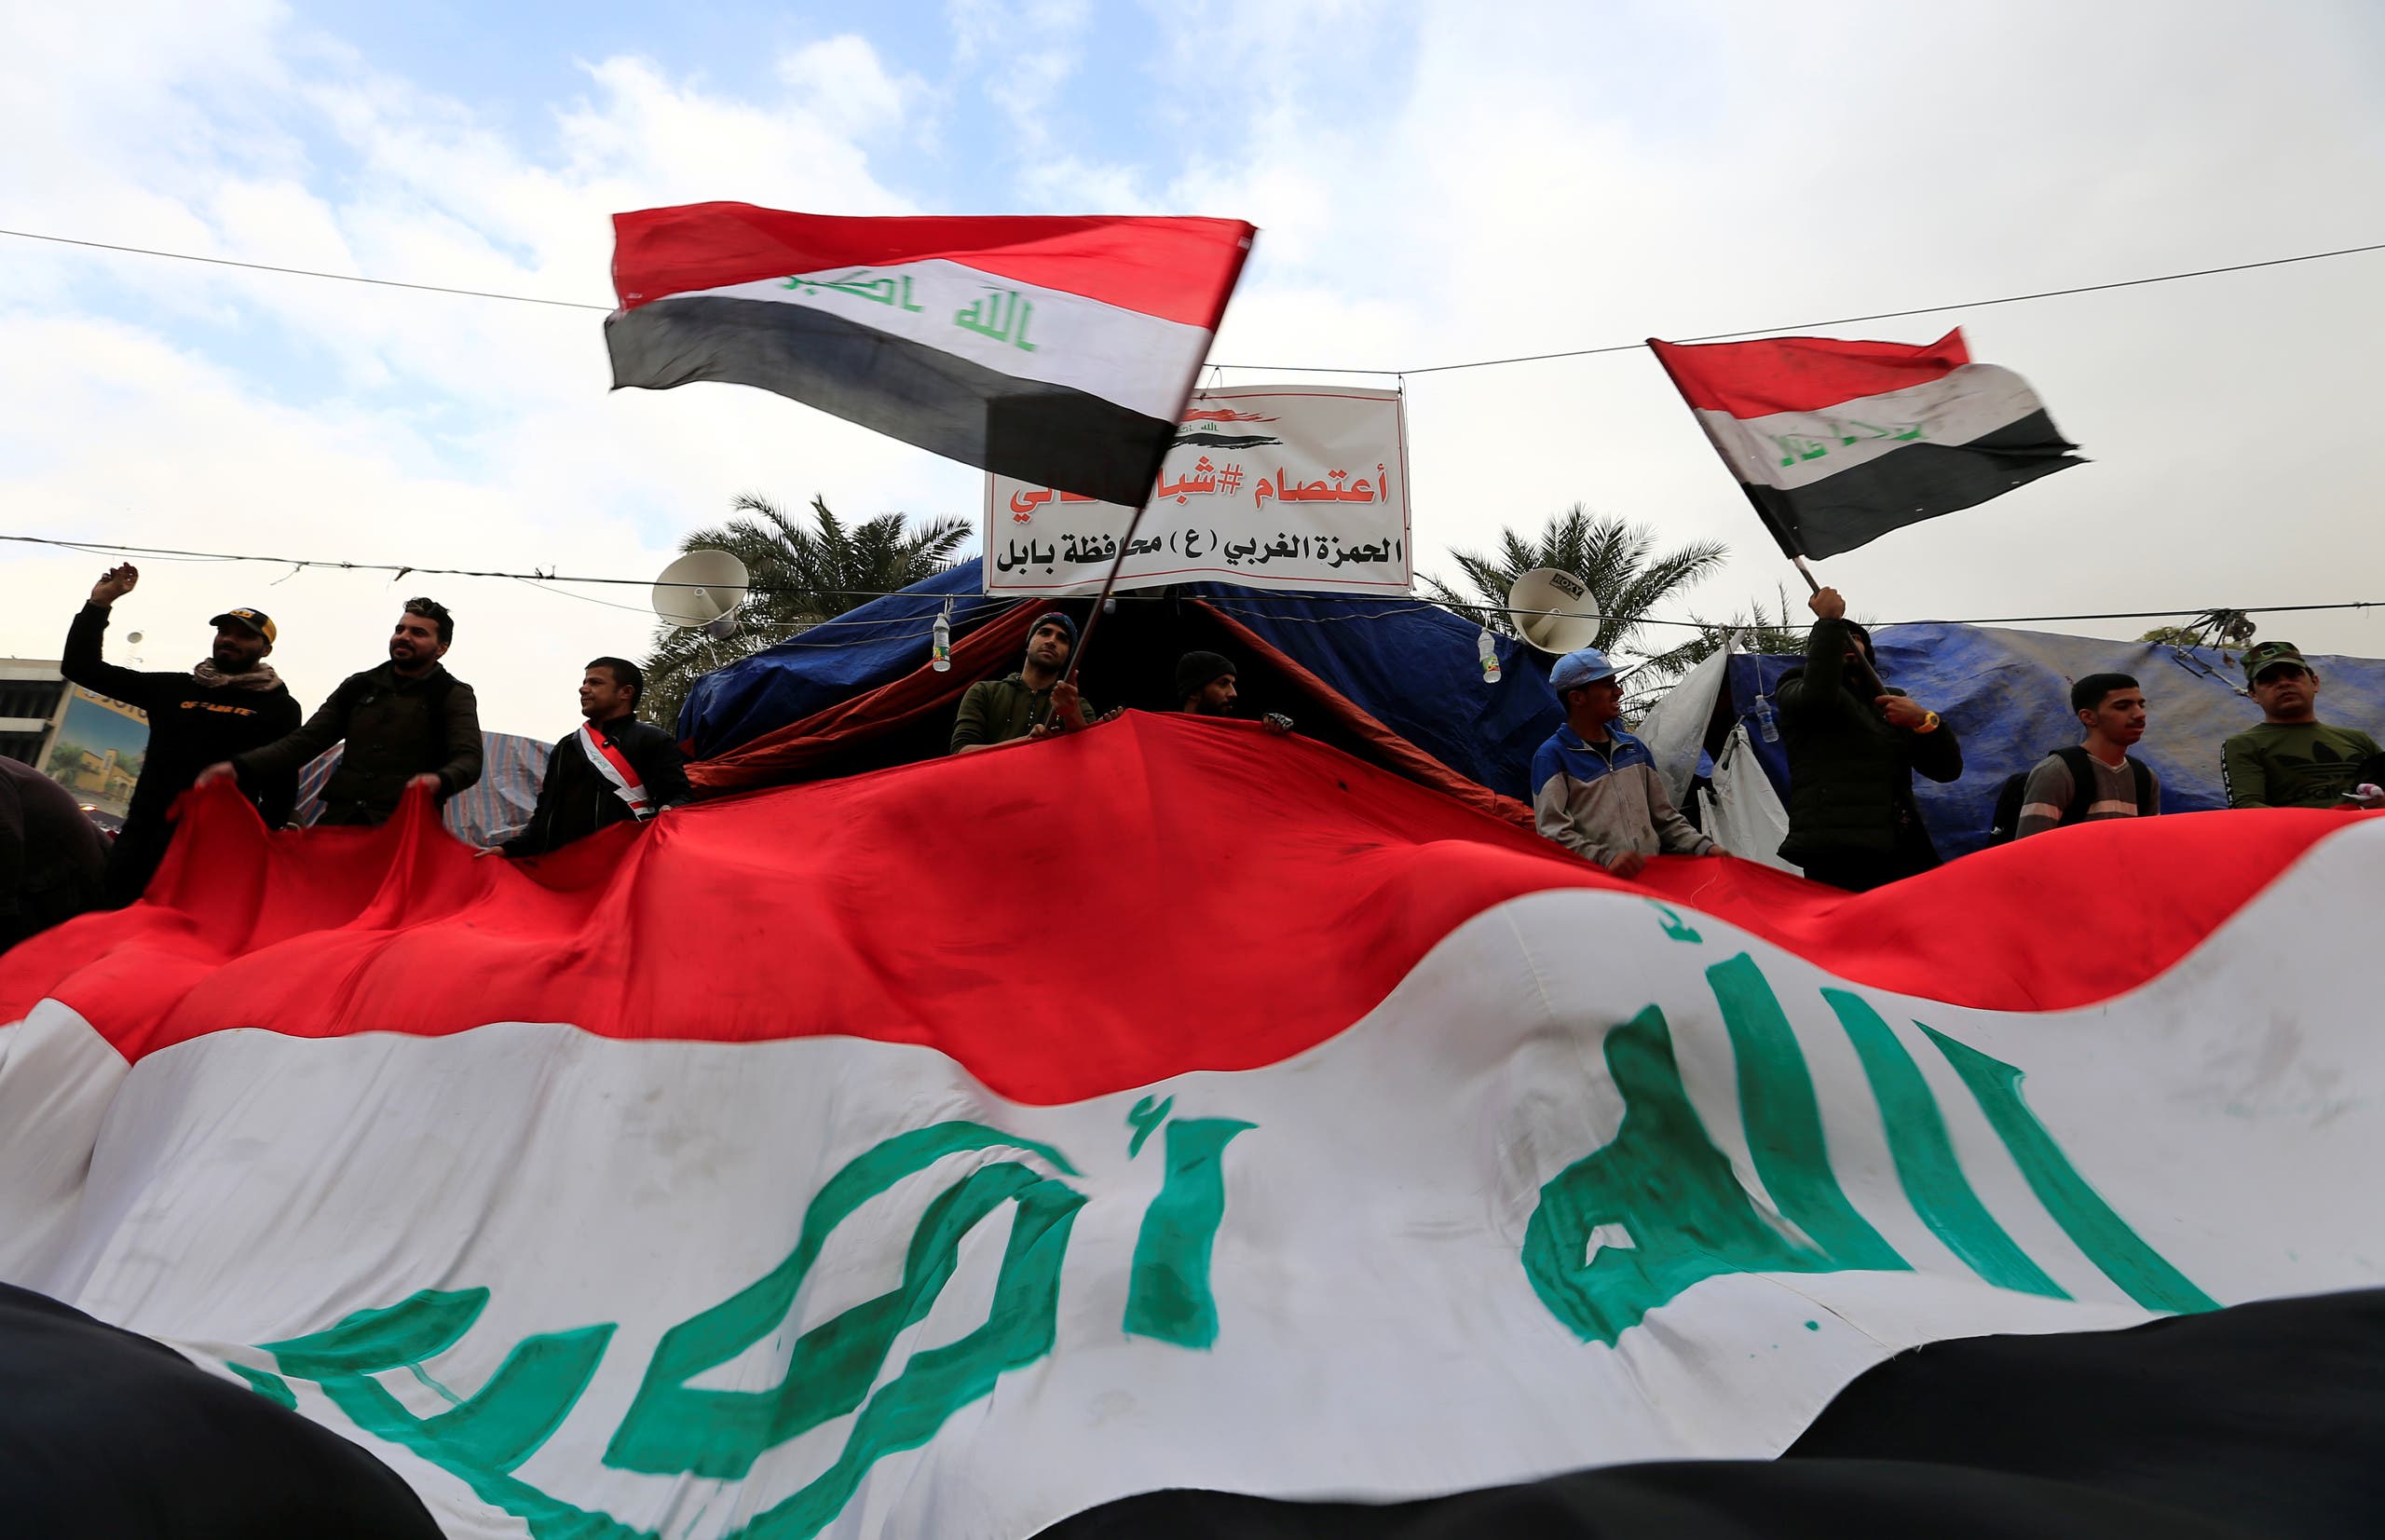 أرض العراق سيادة منتهكة بين ضربات إيران وأميركا